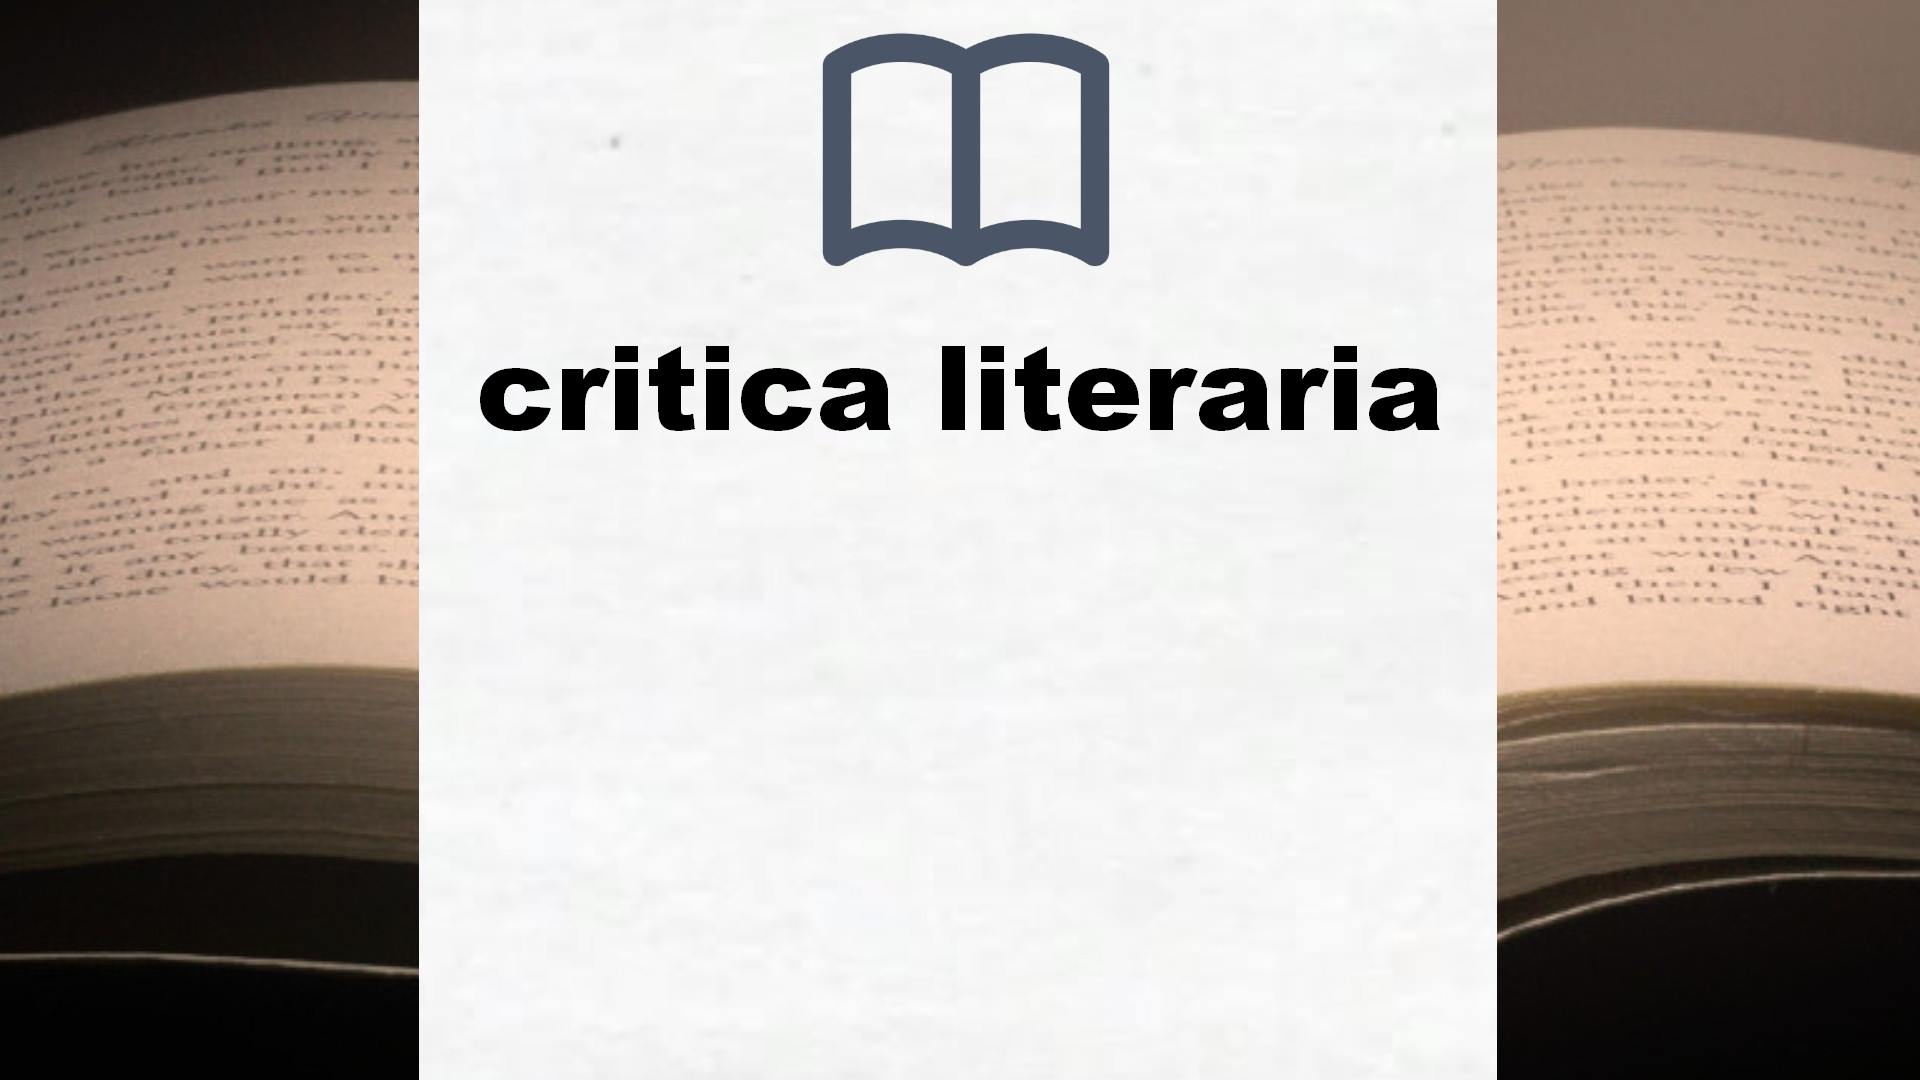 Libros sobre critica literaria